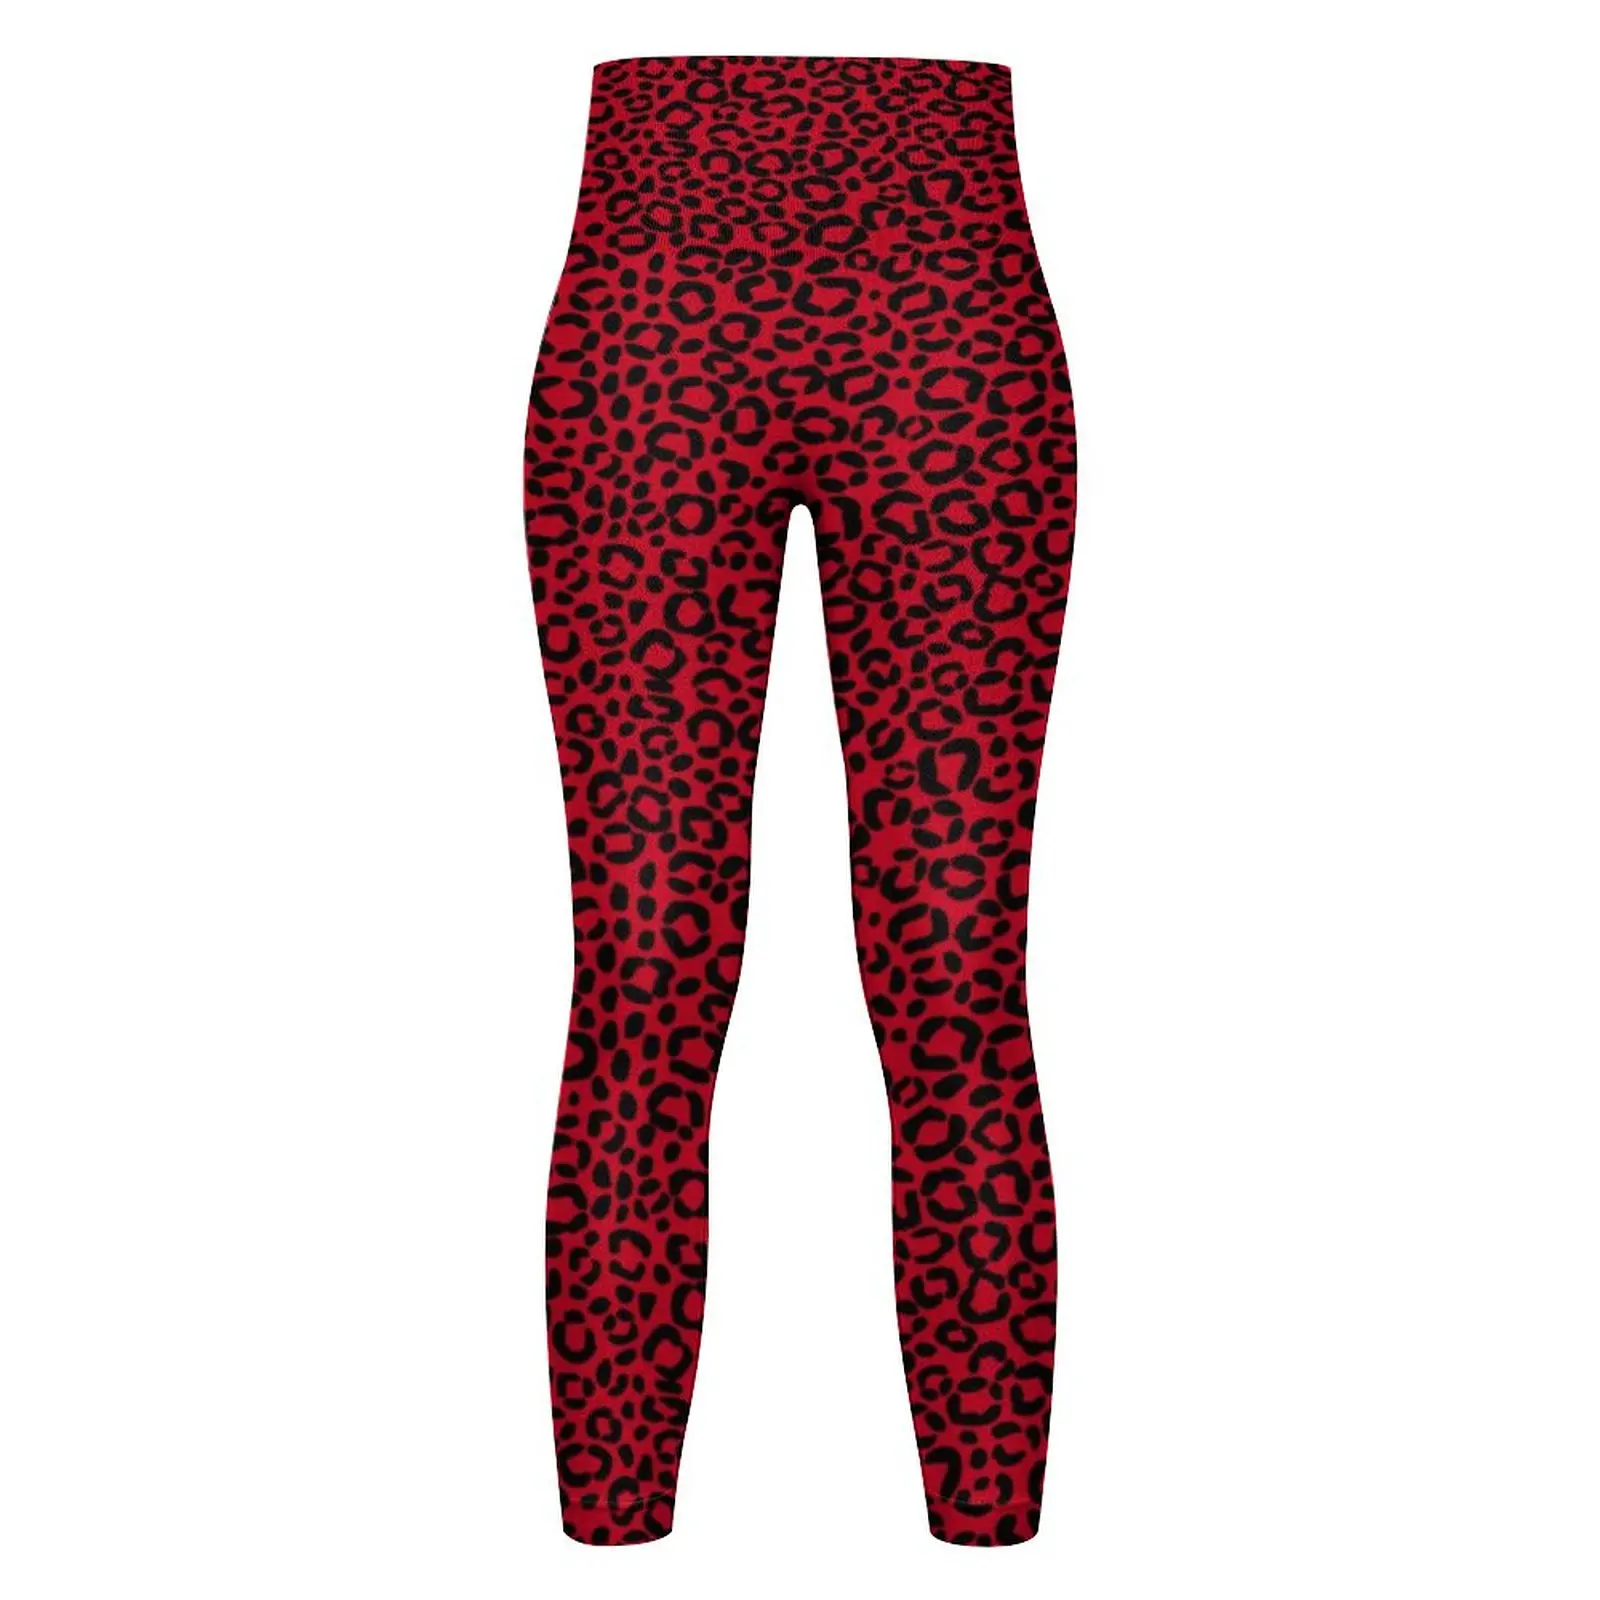 Vermelho E Preto Leopardo Perfeita Perneiras De Pele De Animal Print Ginásio Calças De Yoga Push-Up Elástico Meia-Calça Esporte Feminino Engraçado Leggins Imagem 3